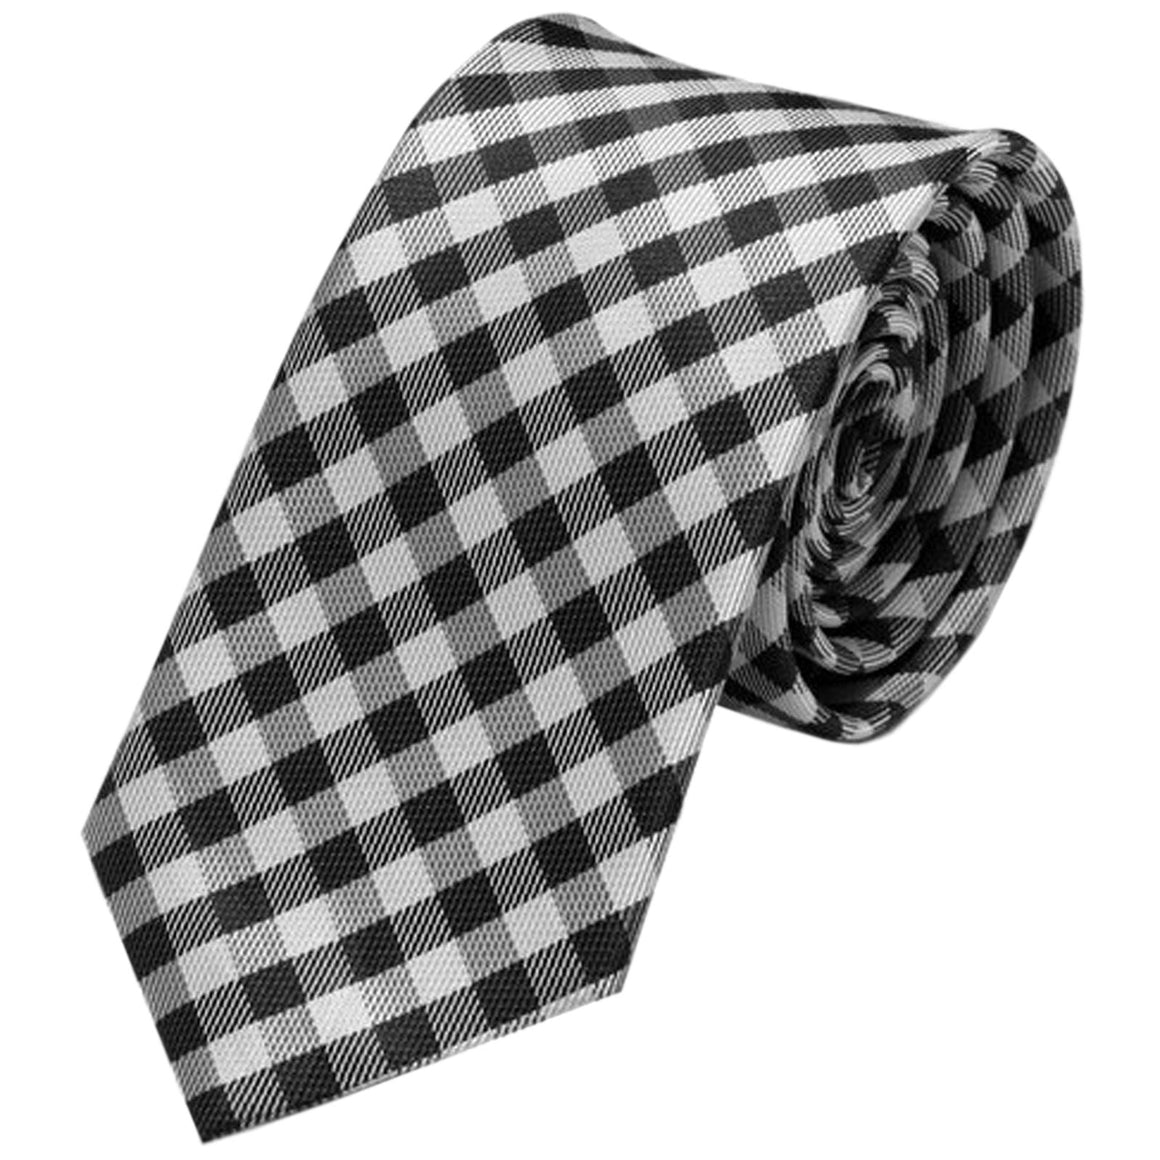 Cravatta da uomo scozzese nera e bianca stretta di 6 m, raccoglitore per cravatta vintage con motivo scozzese